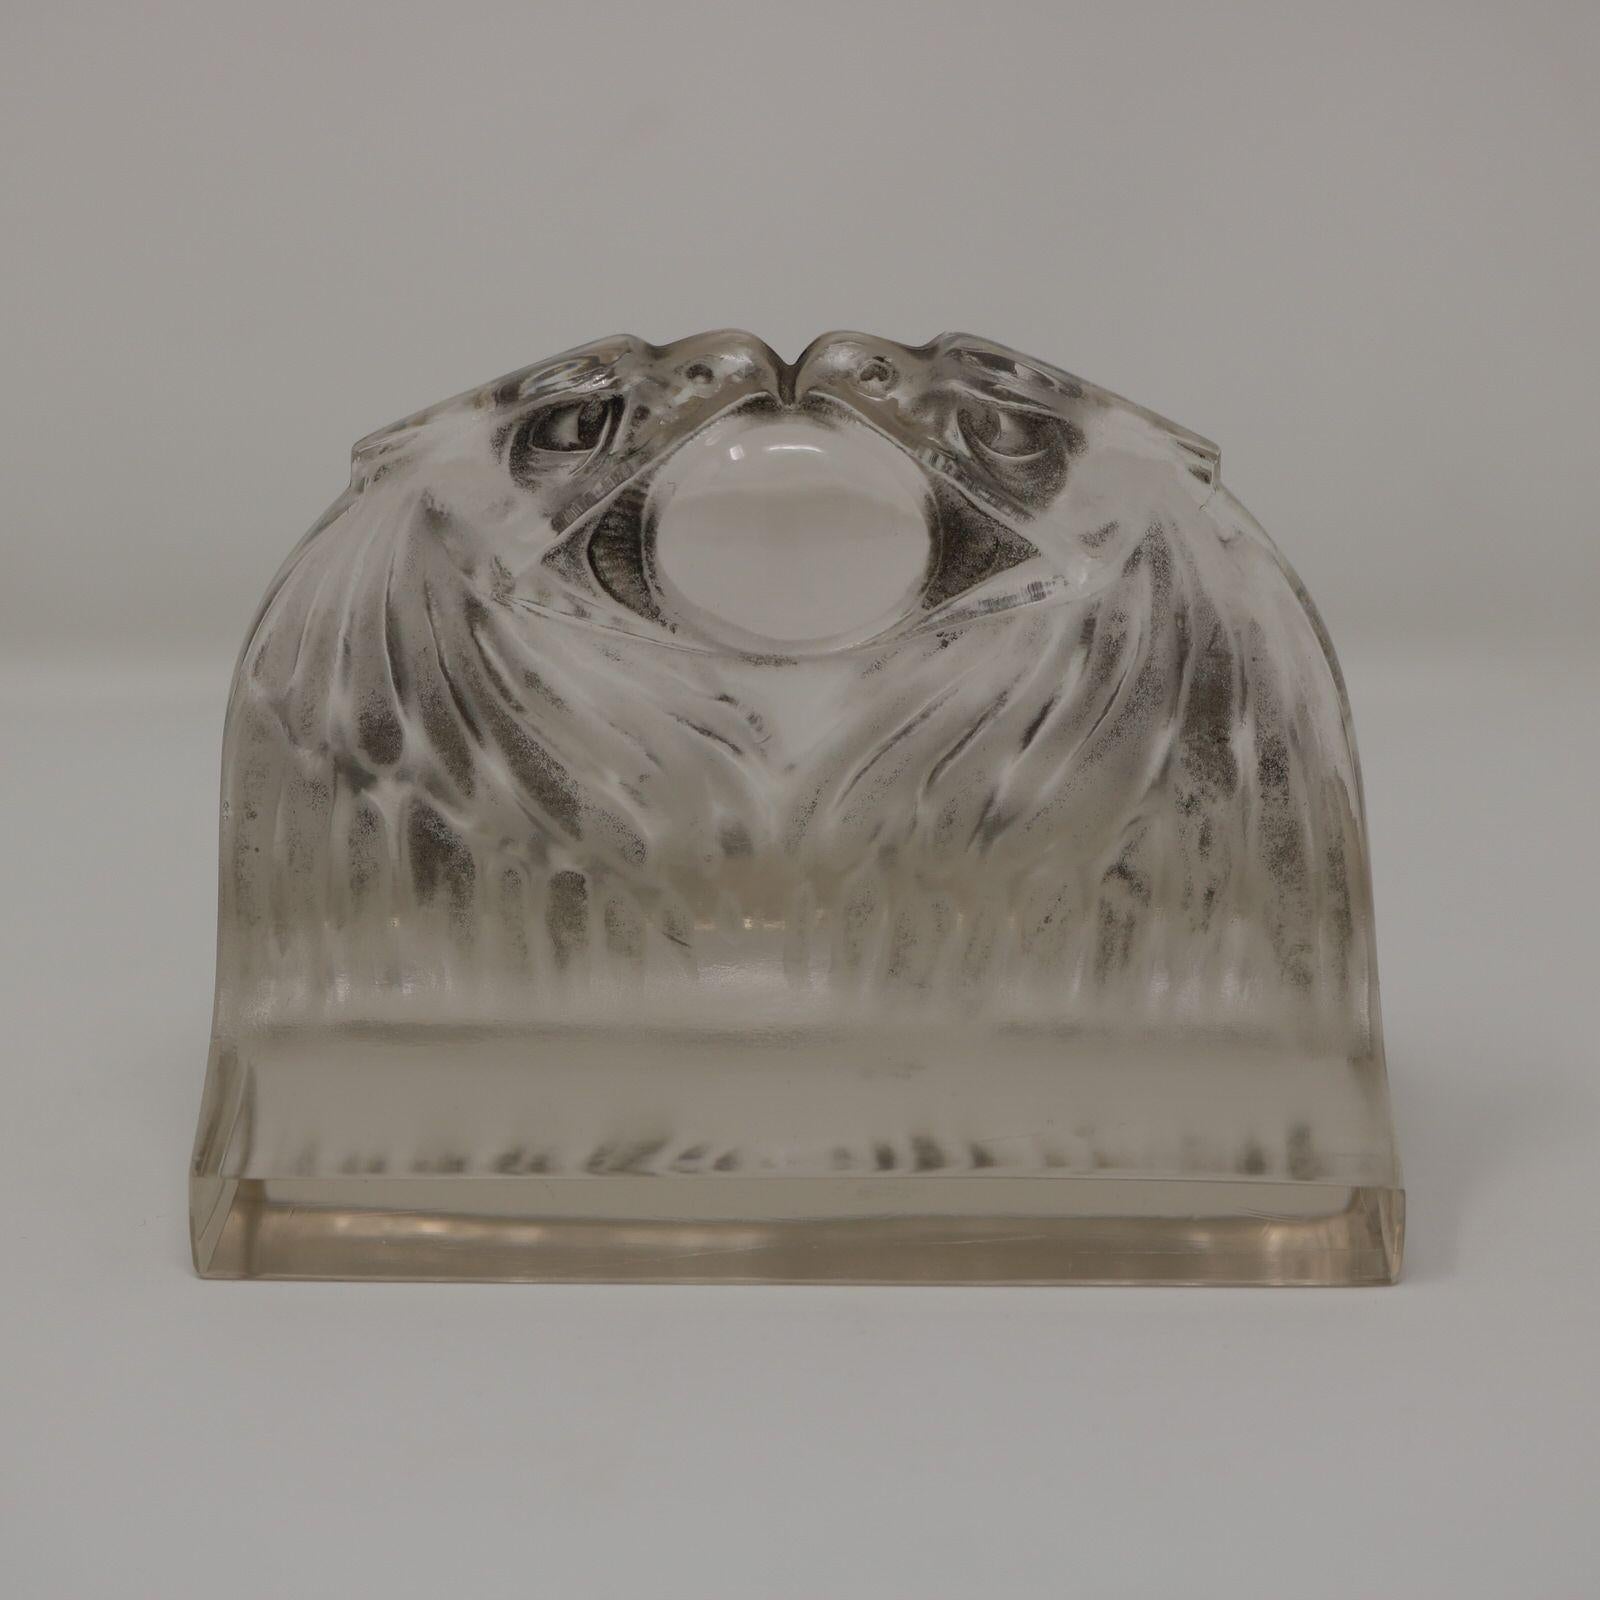 Briefbeschwerer 'Deux Aigles' von Rene Lalique aus klarem und mattiertem Glas, mit grau gebeizten Details. Zwei Adlerköpfe stehen sich gegenüber und haben einen Ball im Schnabel. Geformte Herstellermarke 